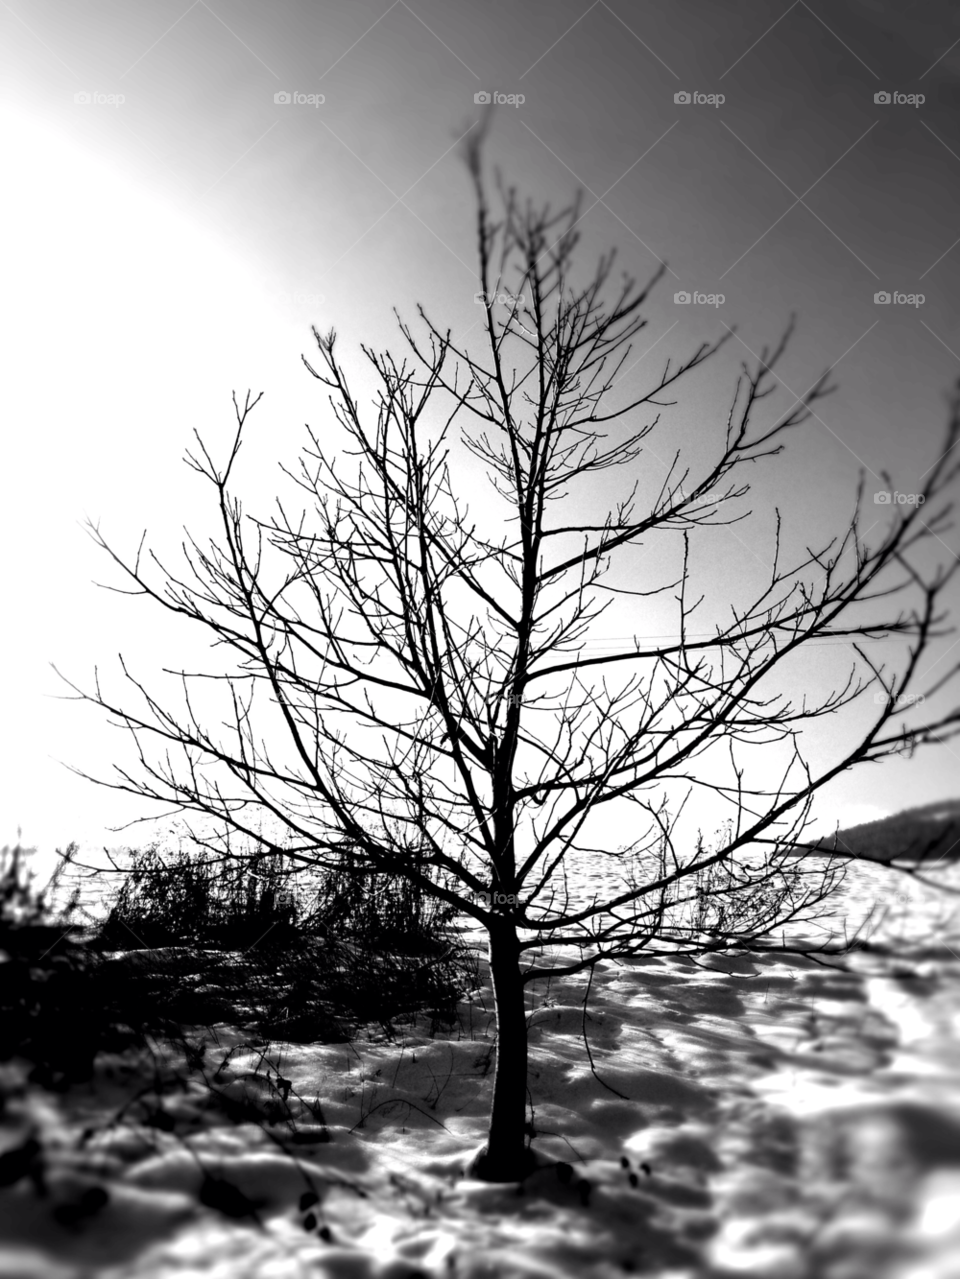 No Person, Dawn, Nature, Winter, Tree